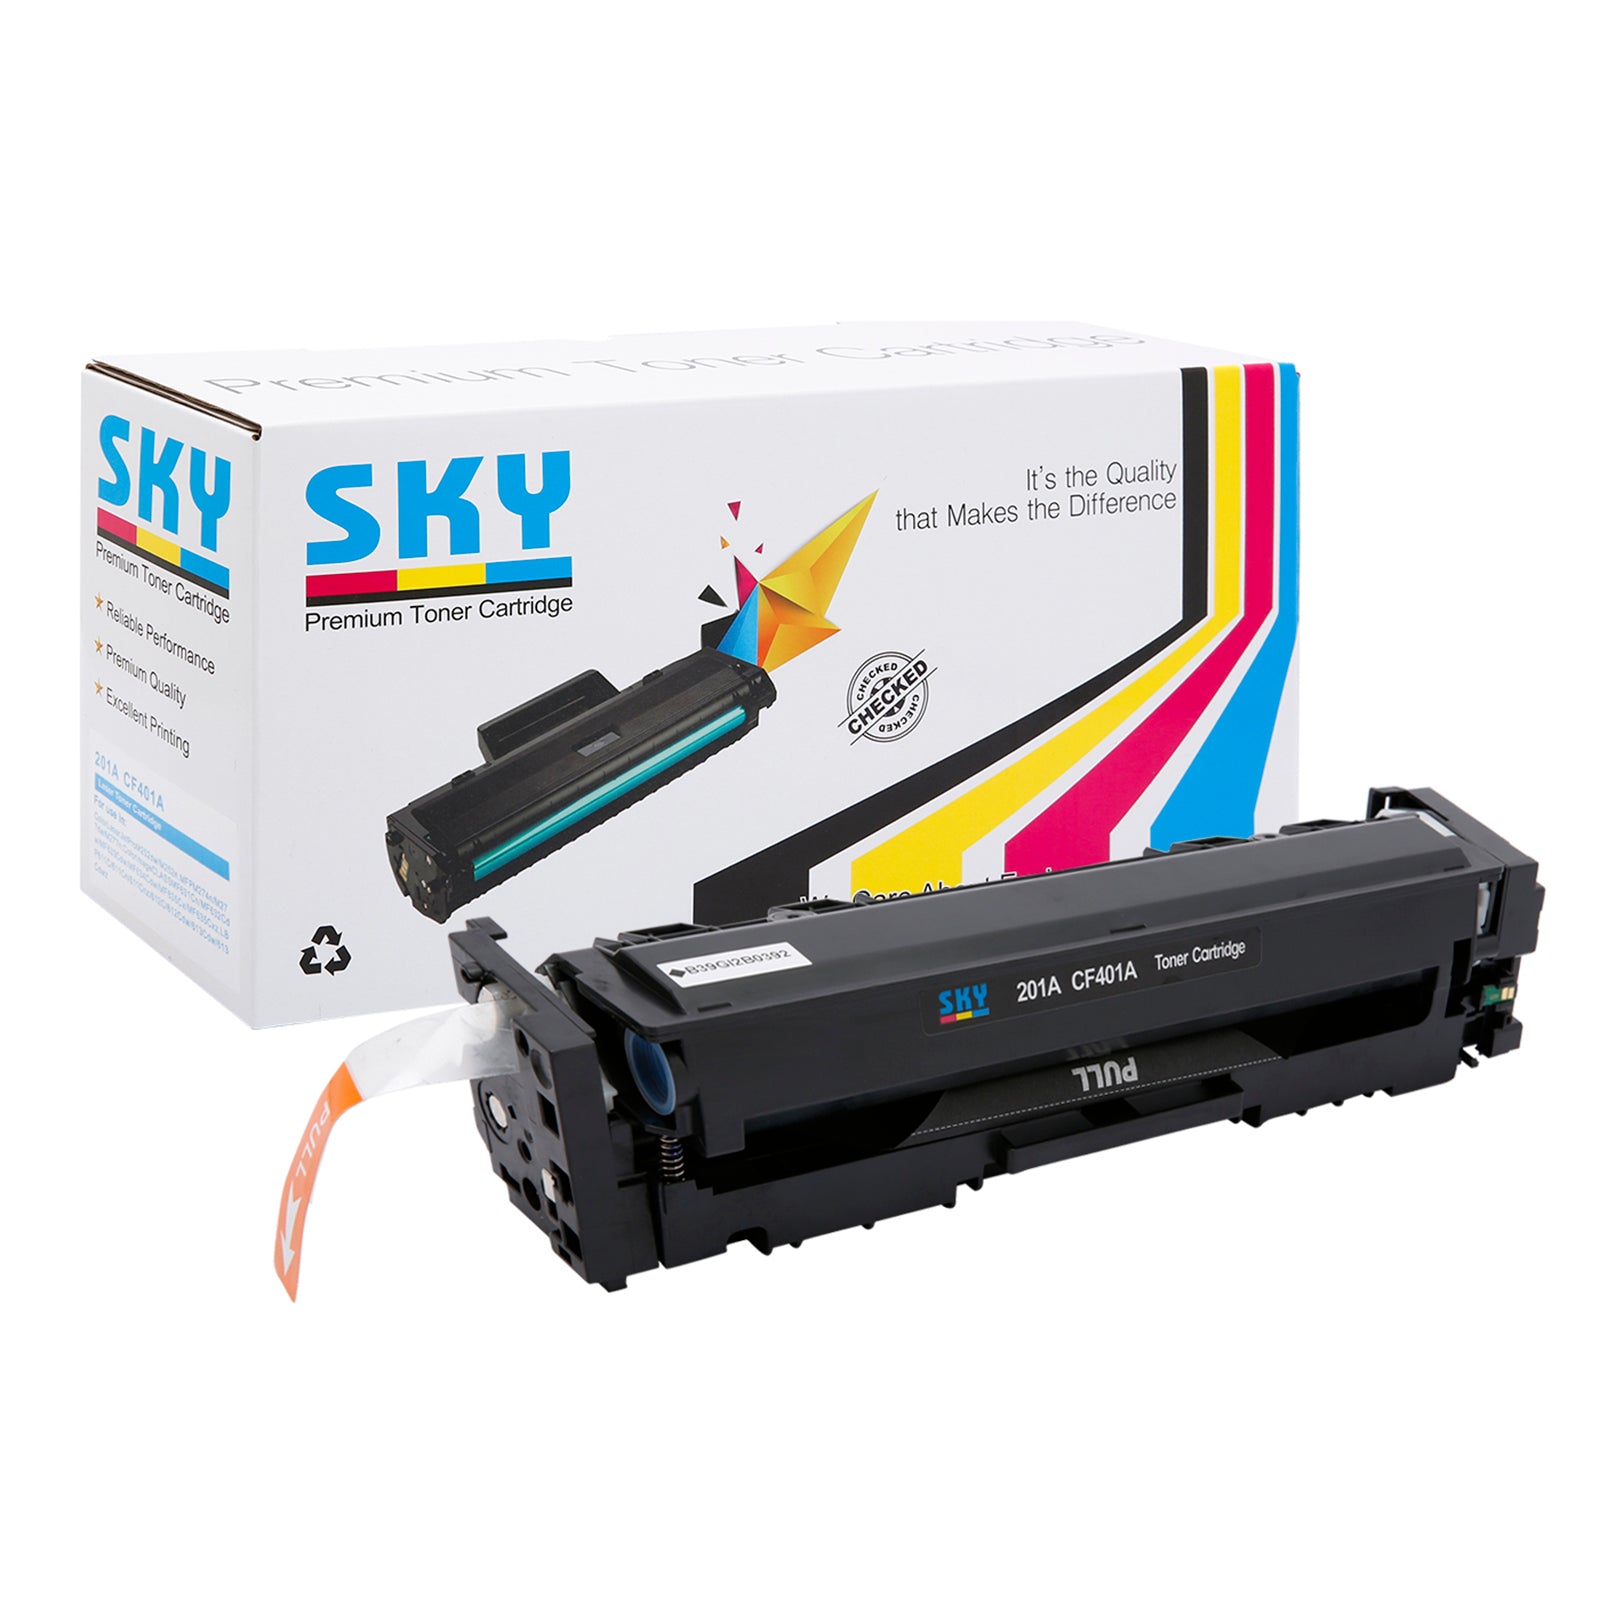 SKY  201A Compatible Toner Cartridges for HP Colour LaserJet Pro M252, M274 and M277